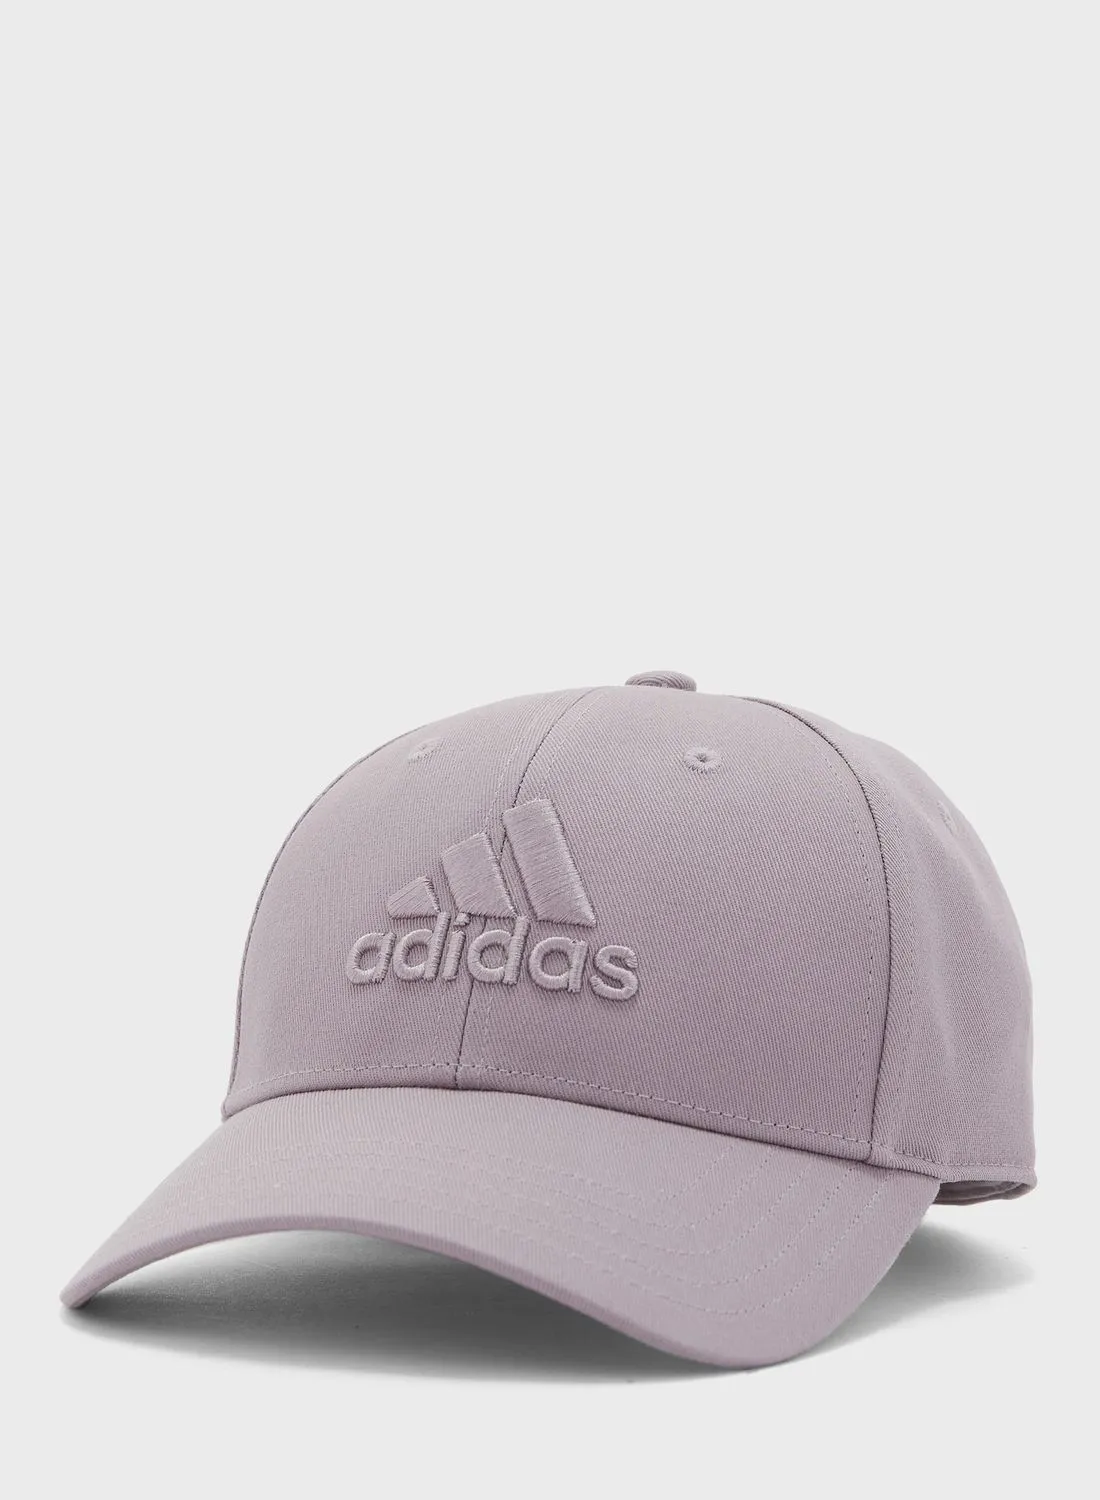 Adidas Tonal Logo Cap